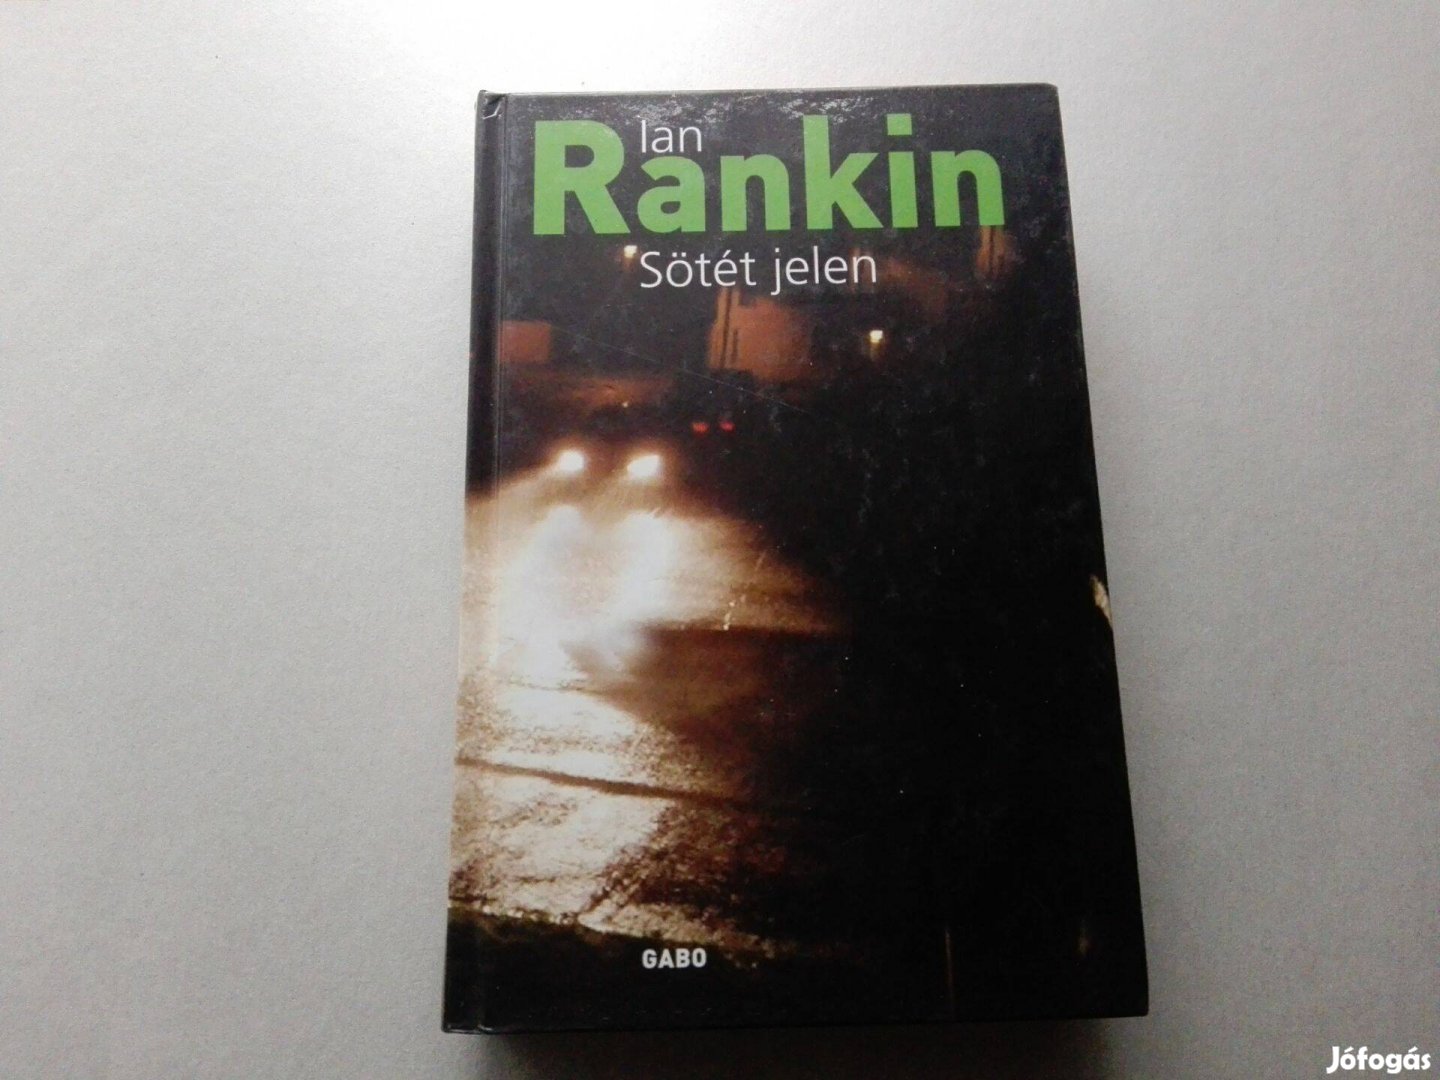 Ian Rankin: Sötét jelen című Új könyve akciósan eladó !